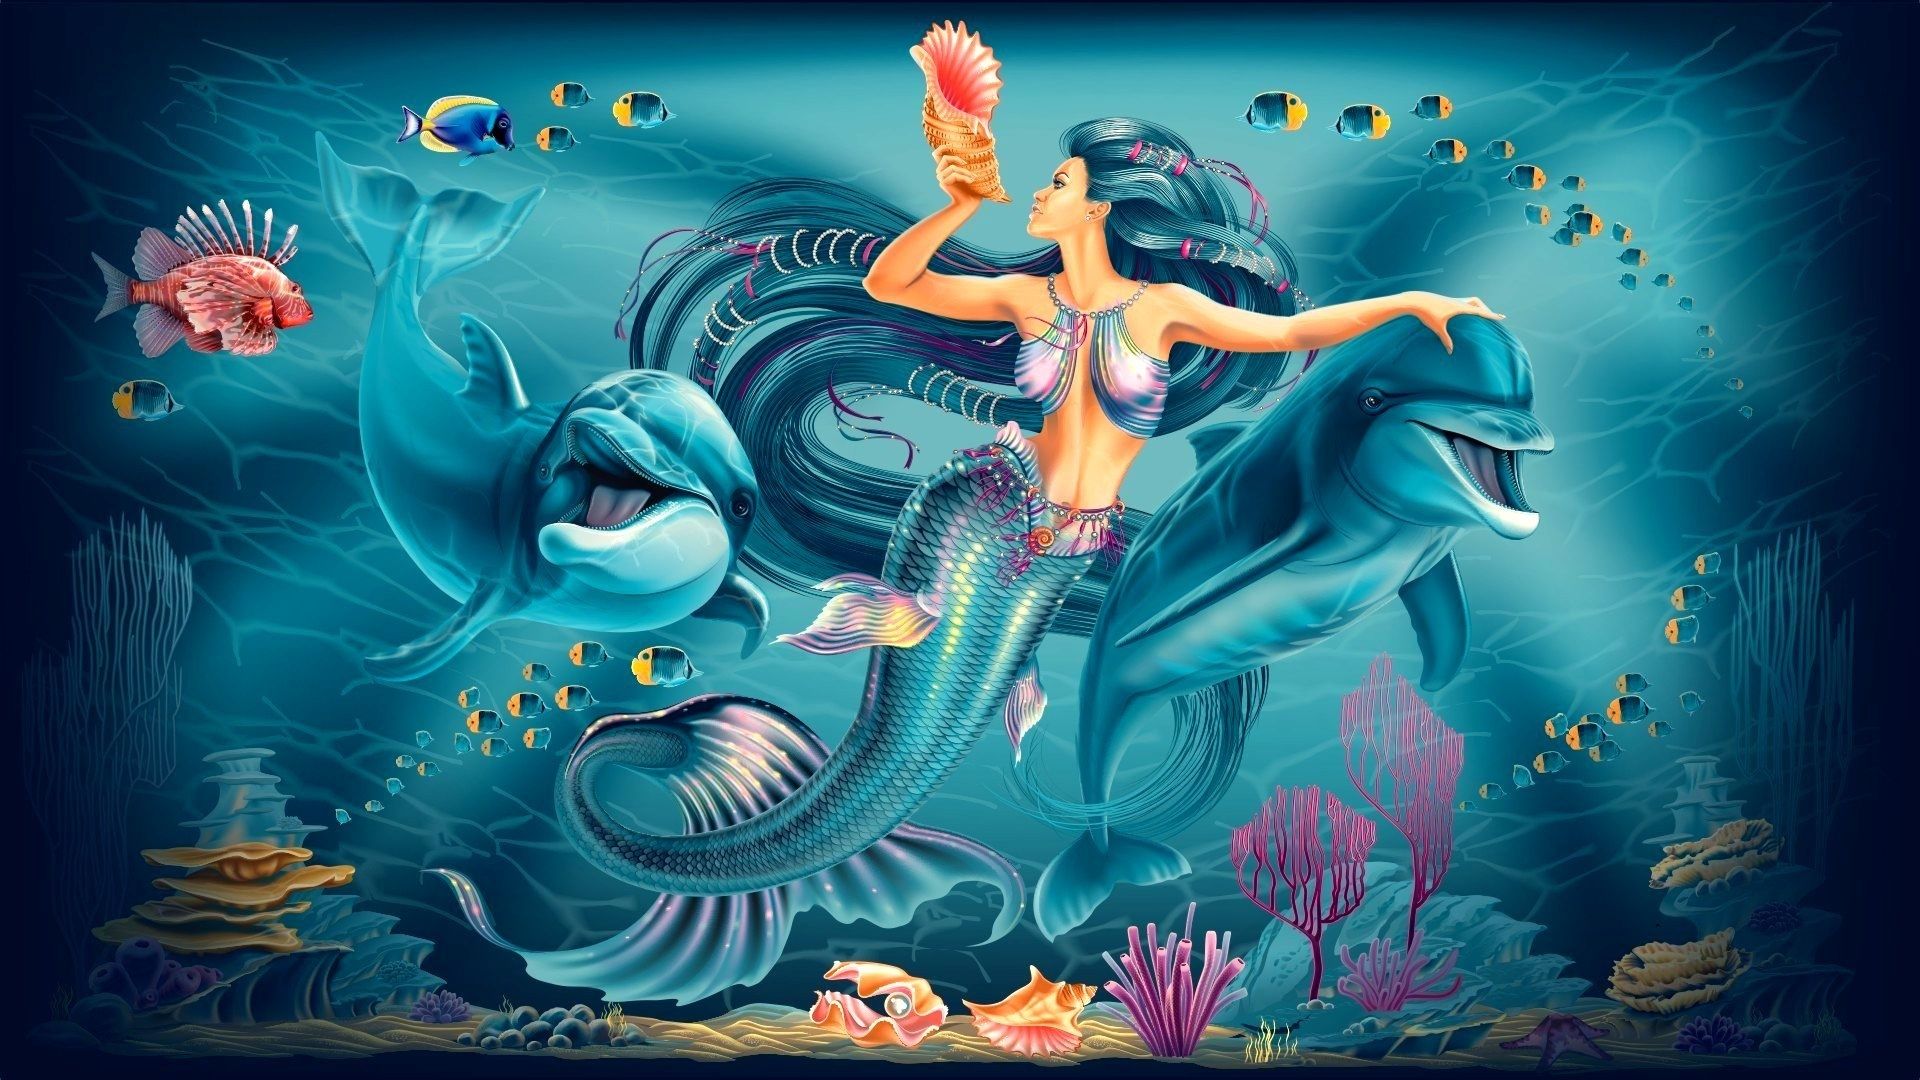 Mermaids Wallpaper. Mermaids Wallpaper, Surreal Mermaids Wallpaper and Mermaids Dolphins Wallpaper